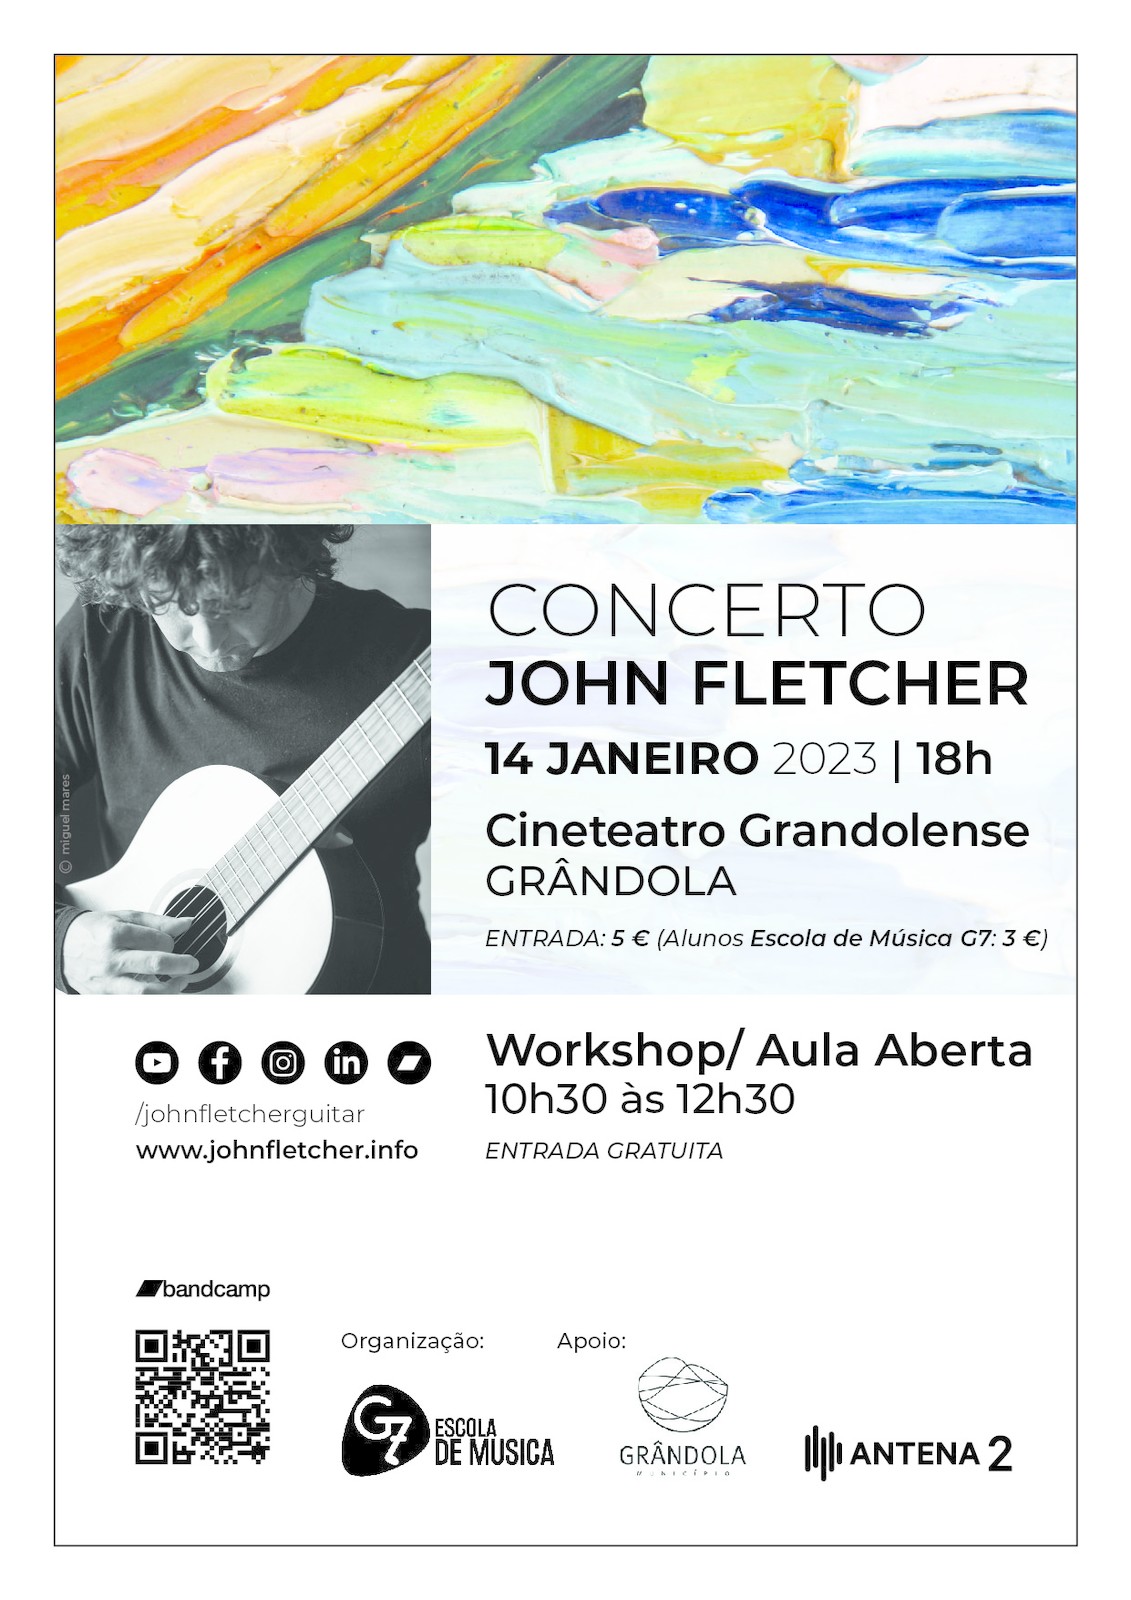 Concerto com John Fletcher